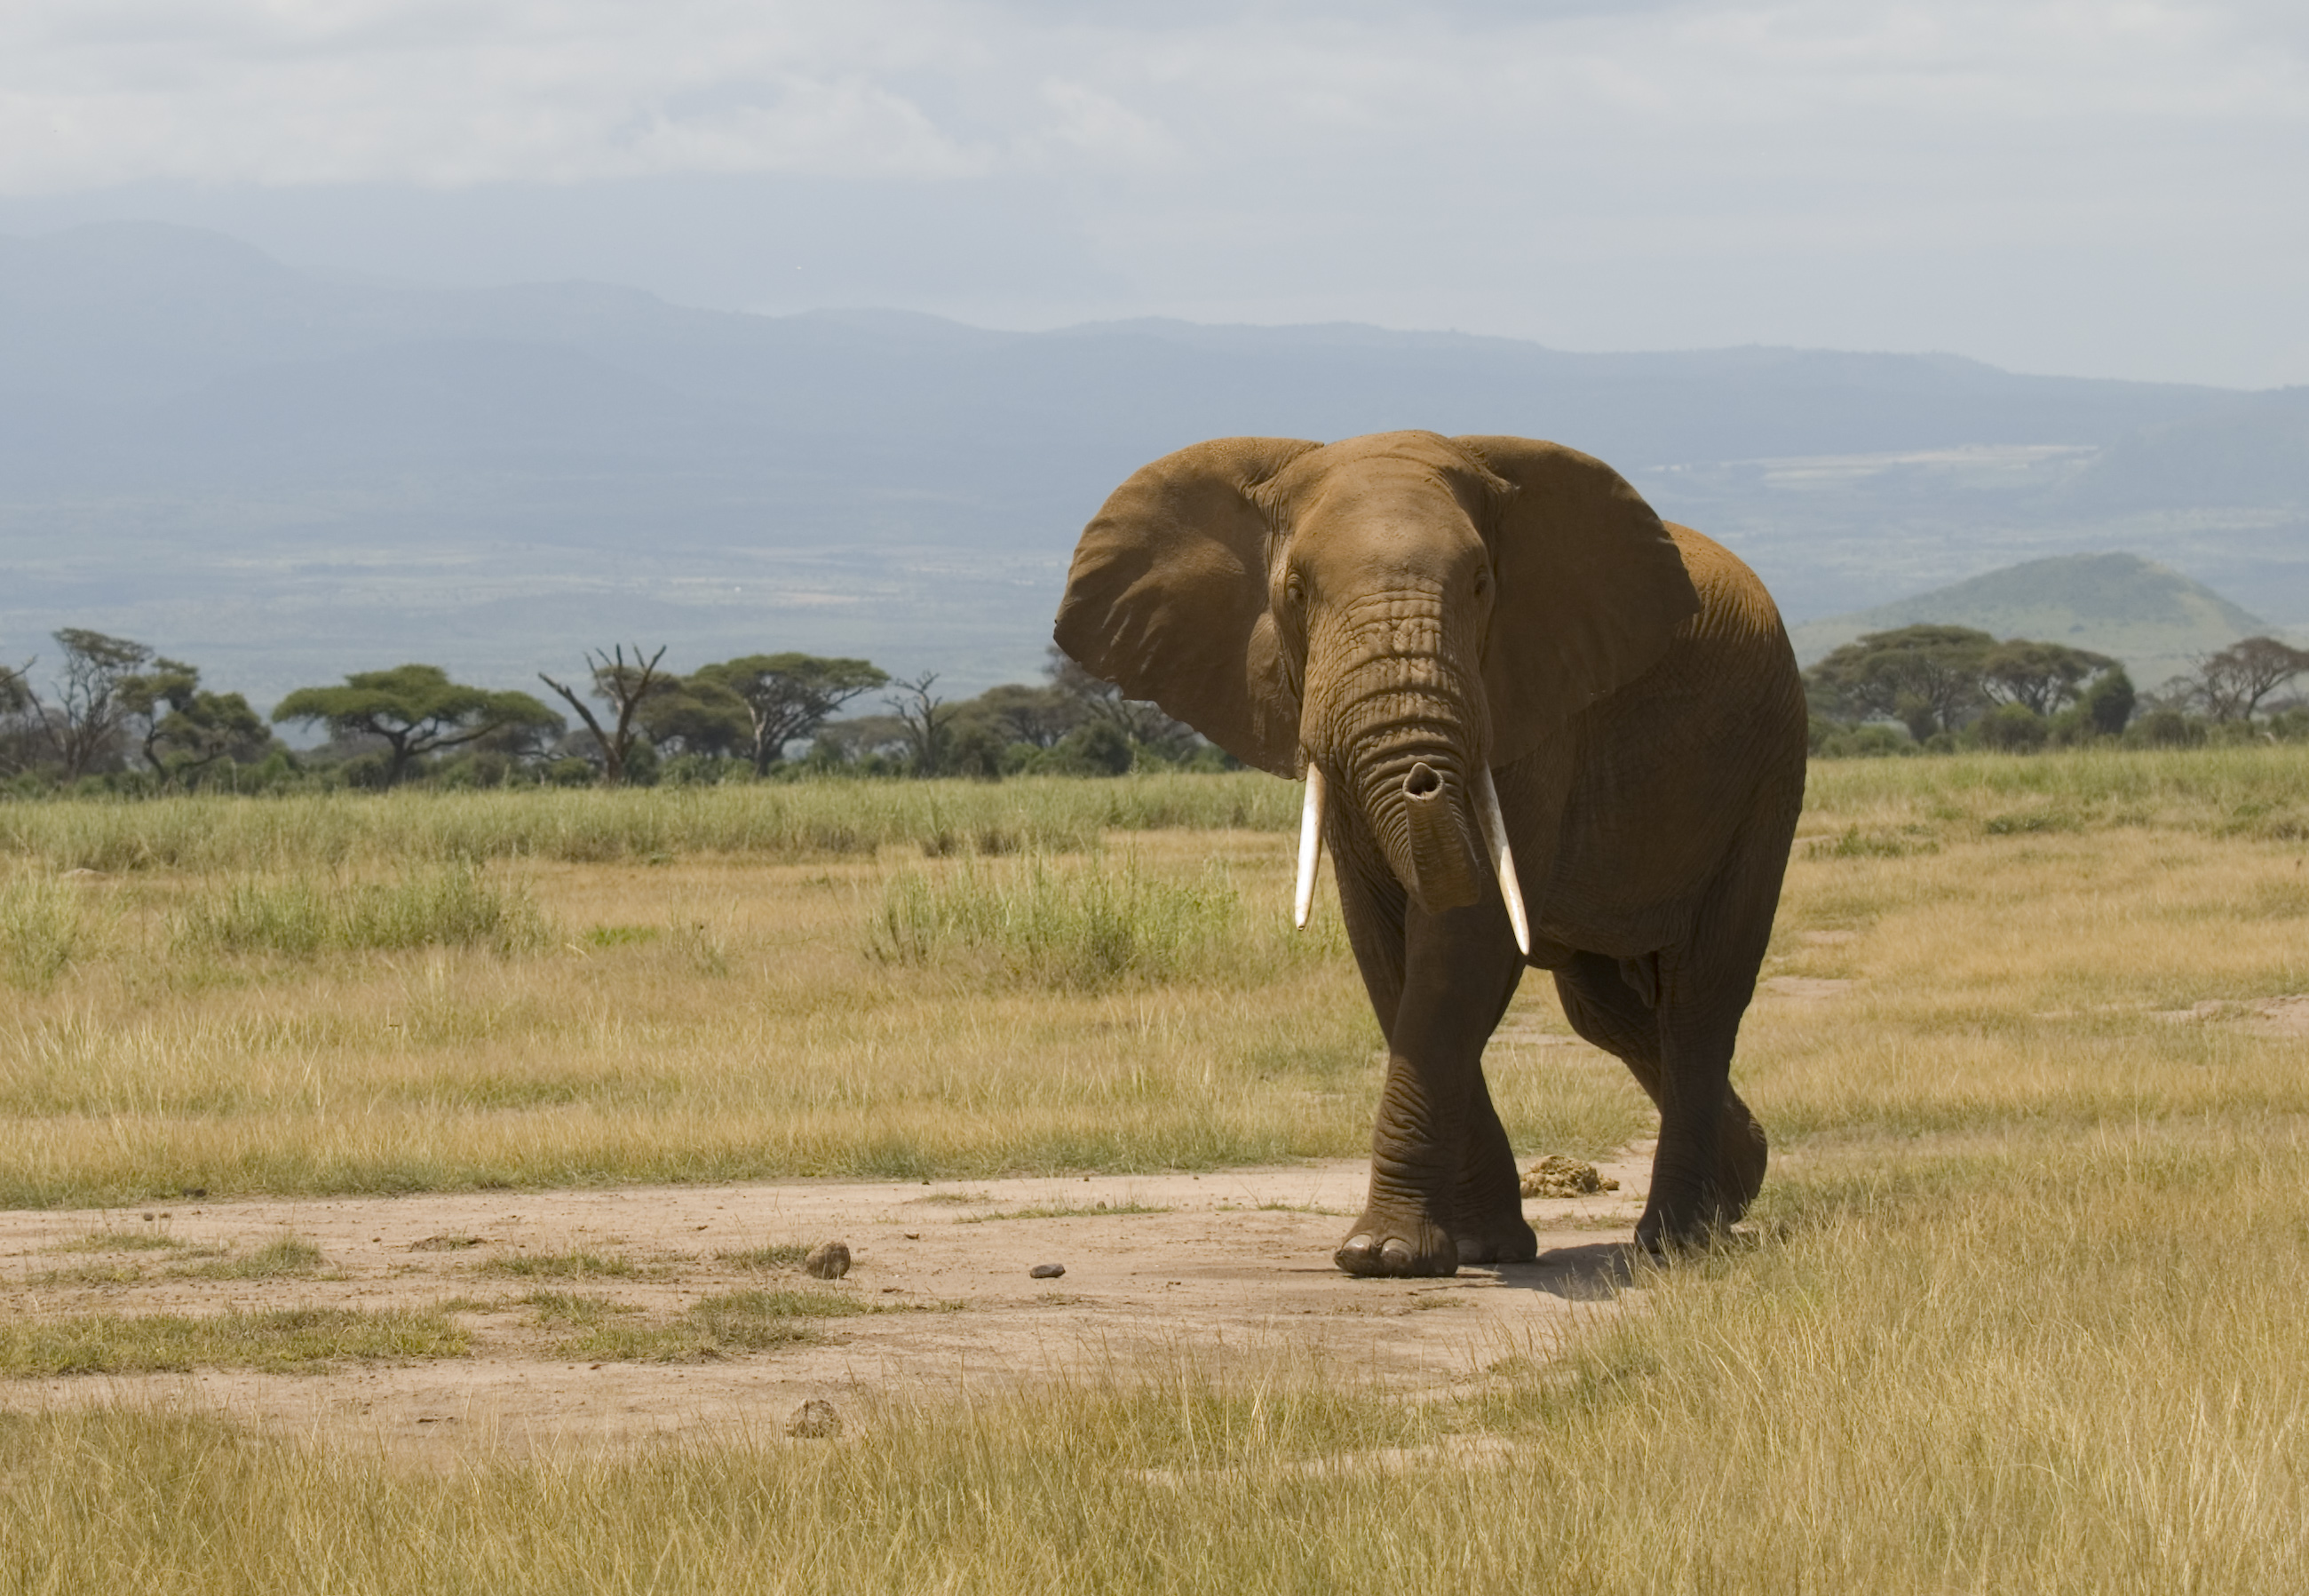 Elephant hunting in Kenya - Wikipedia